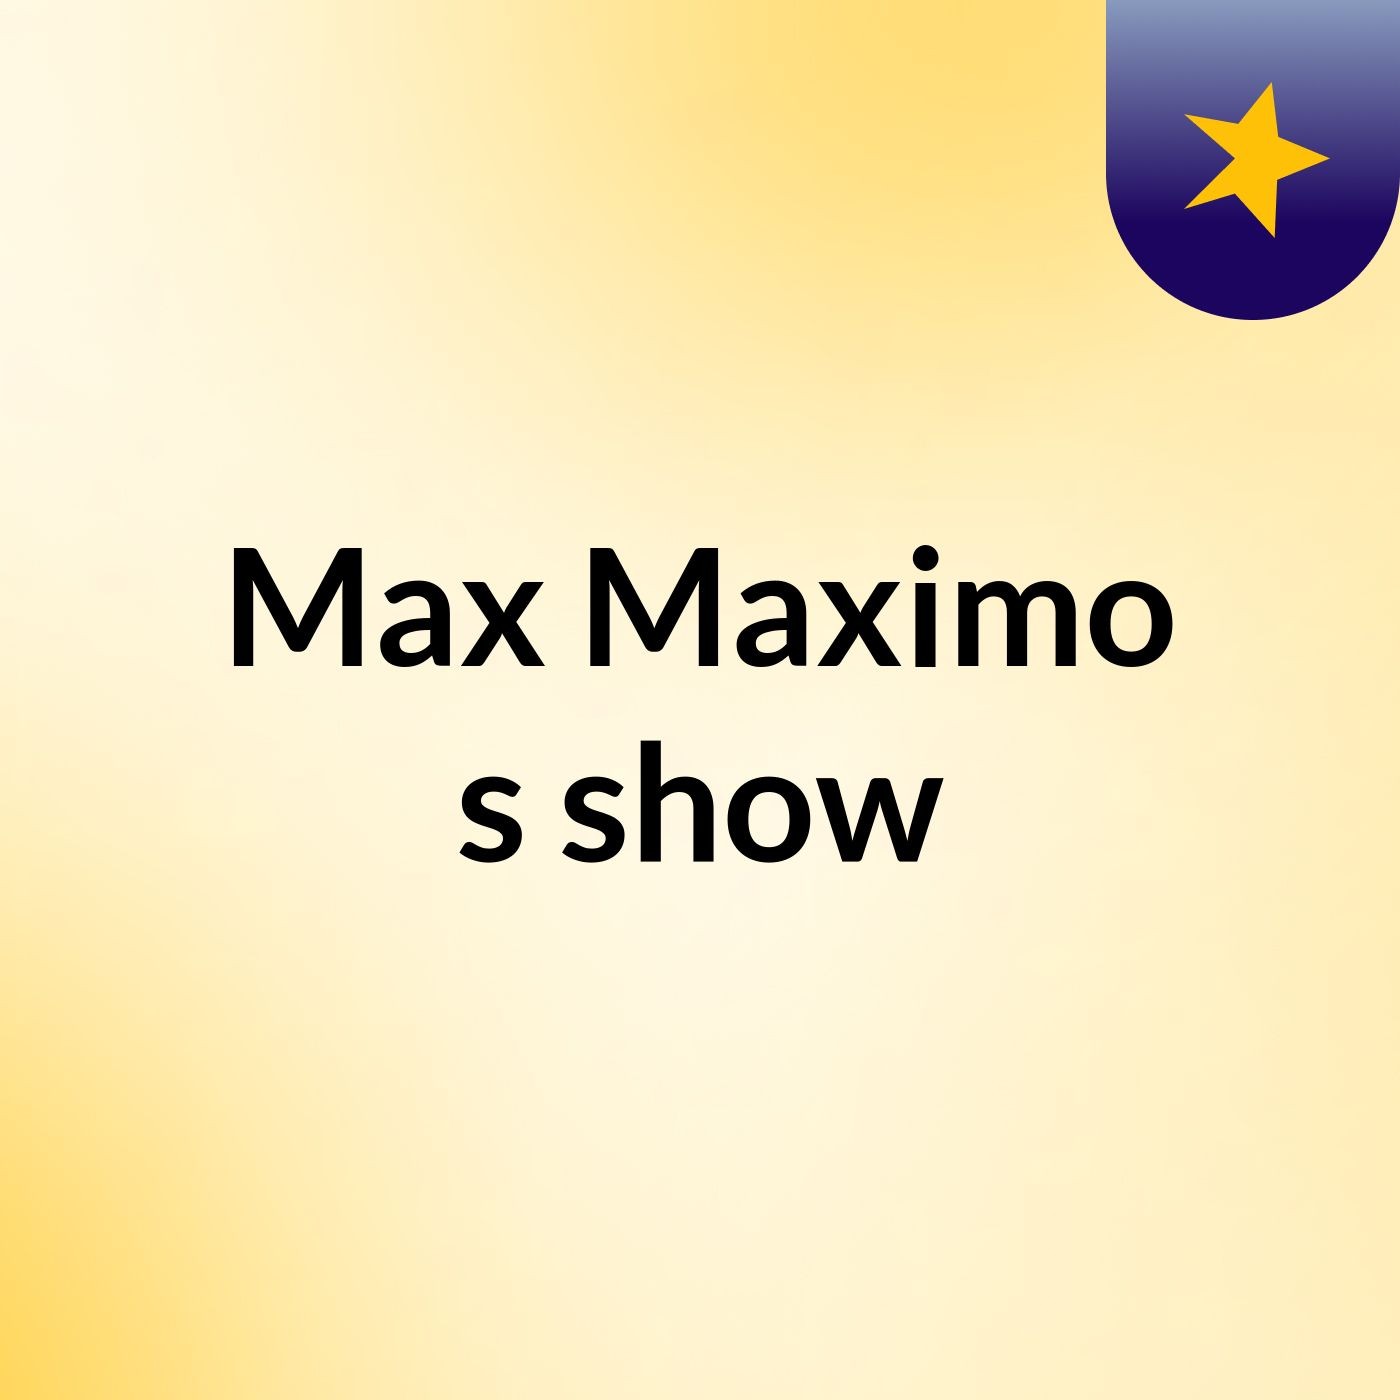 Max Maximo's show